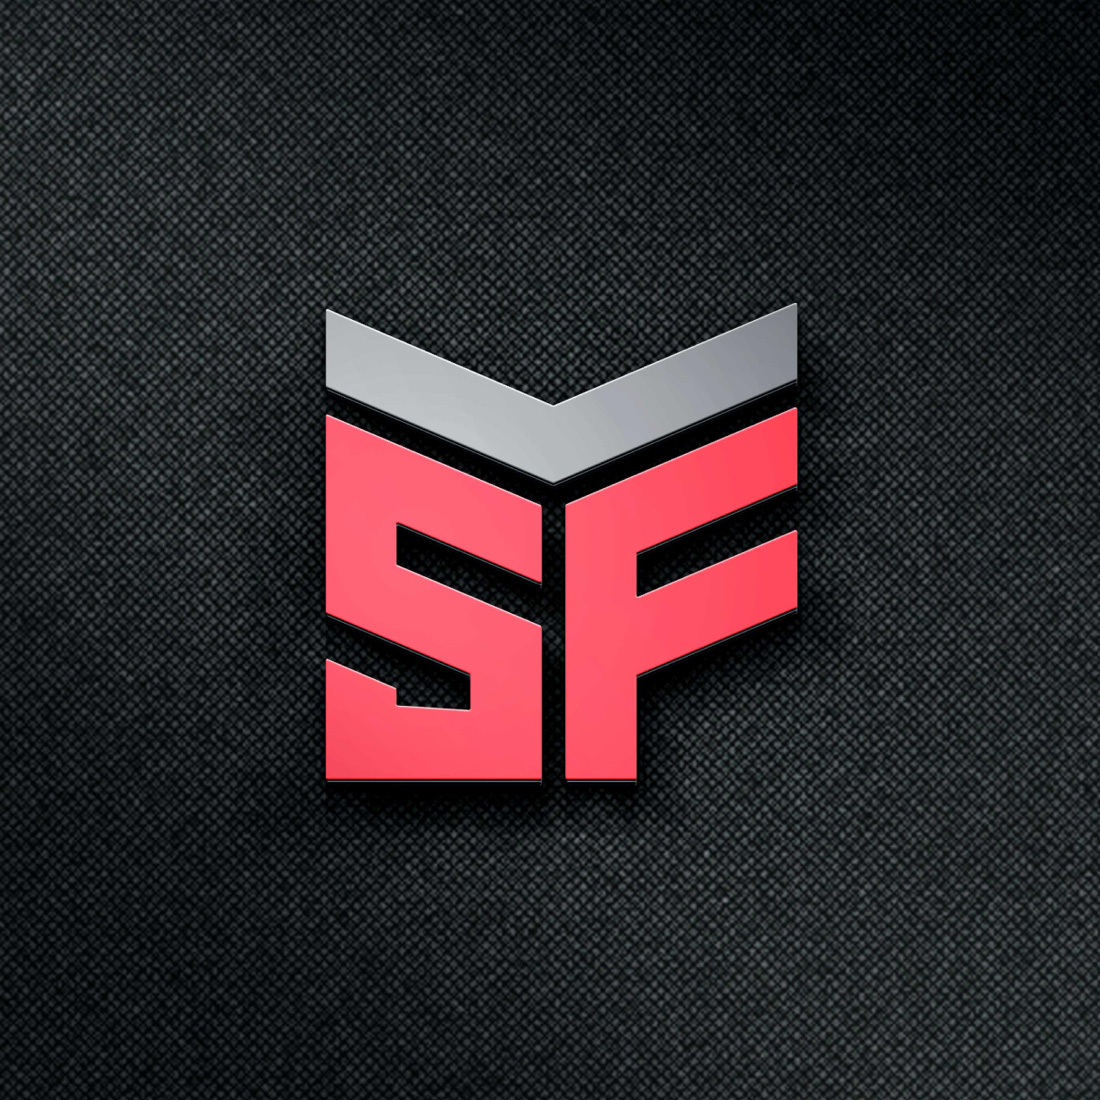 SMF logo design preview image.